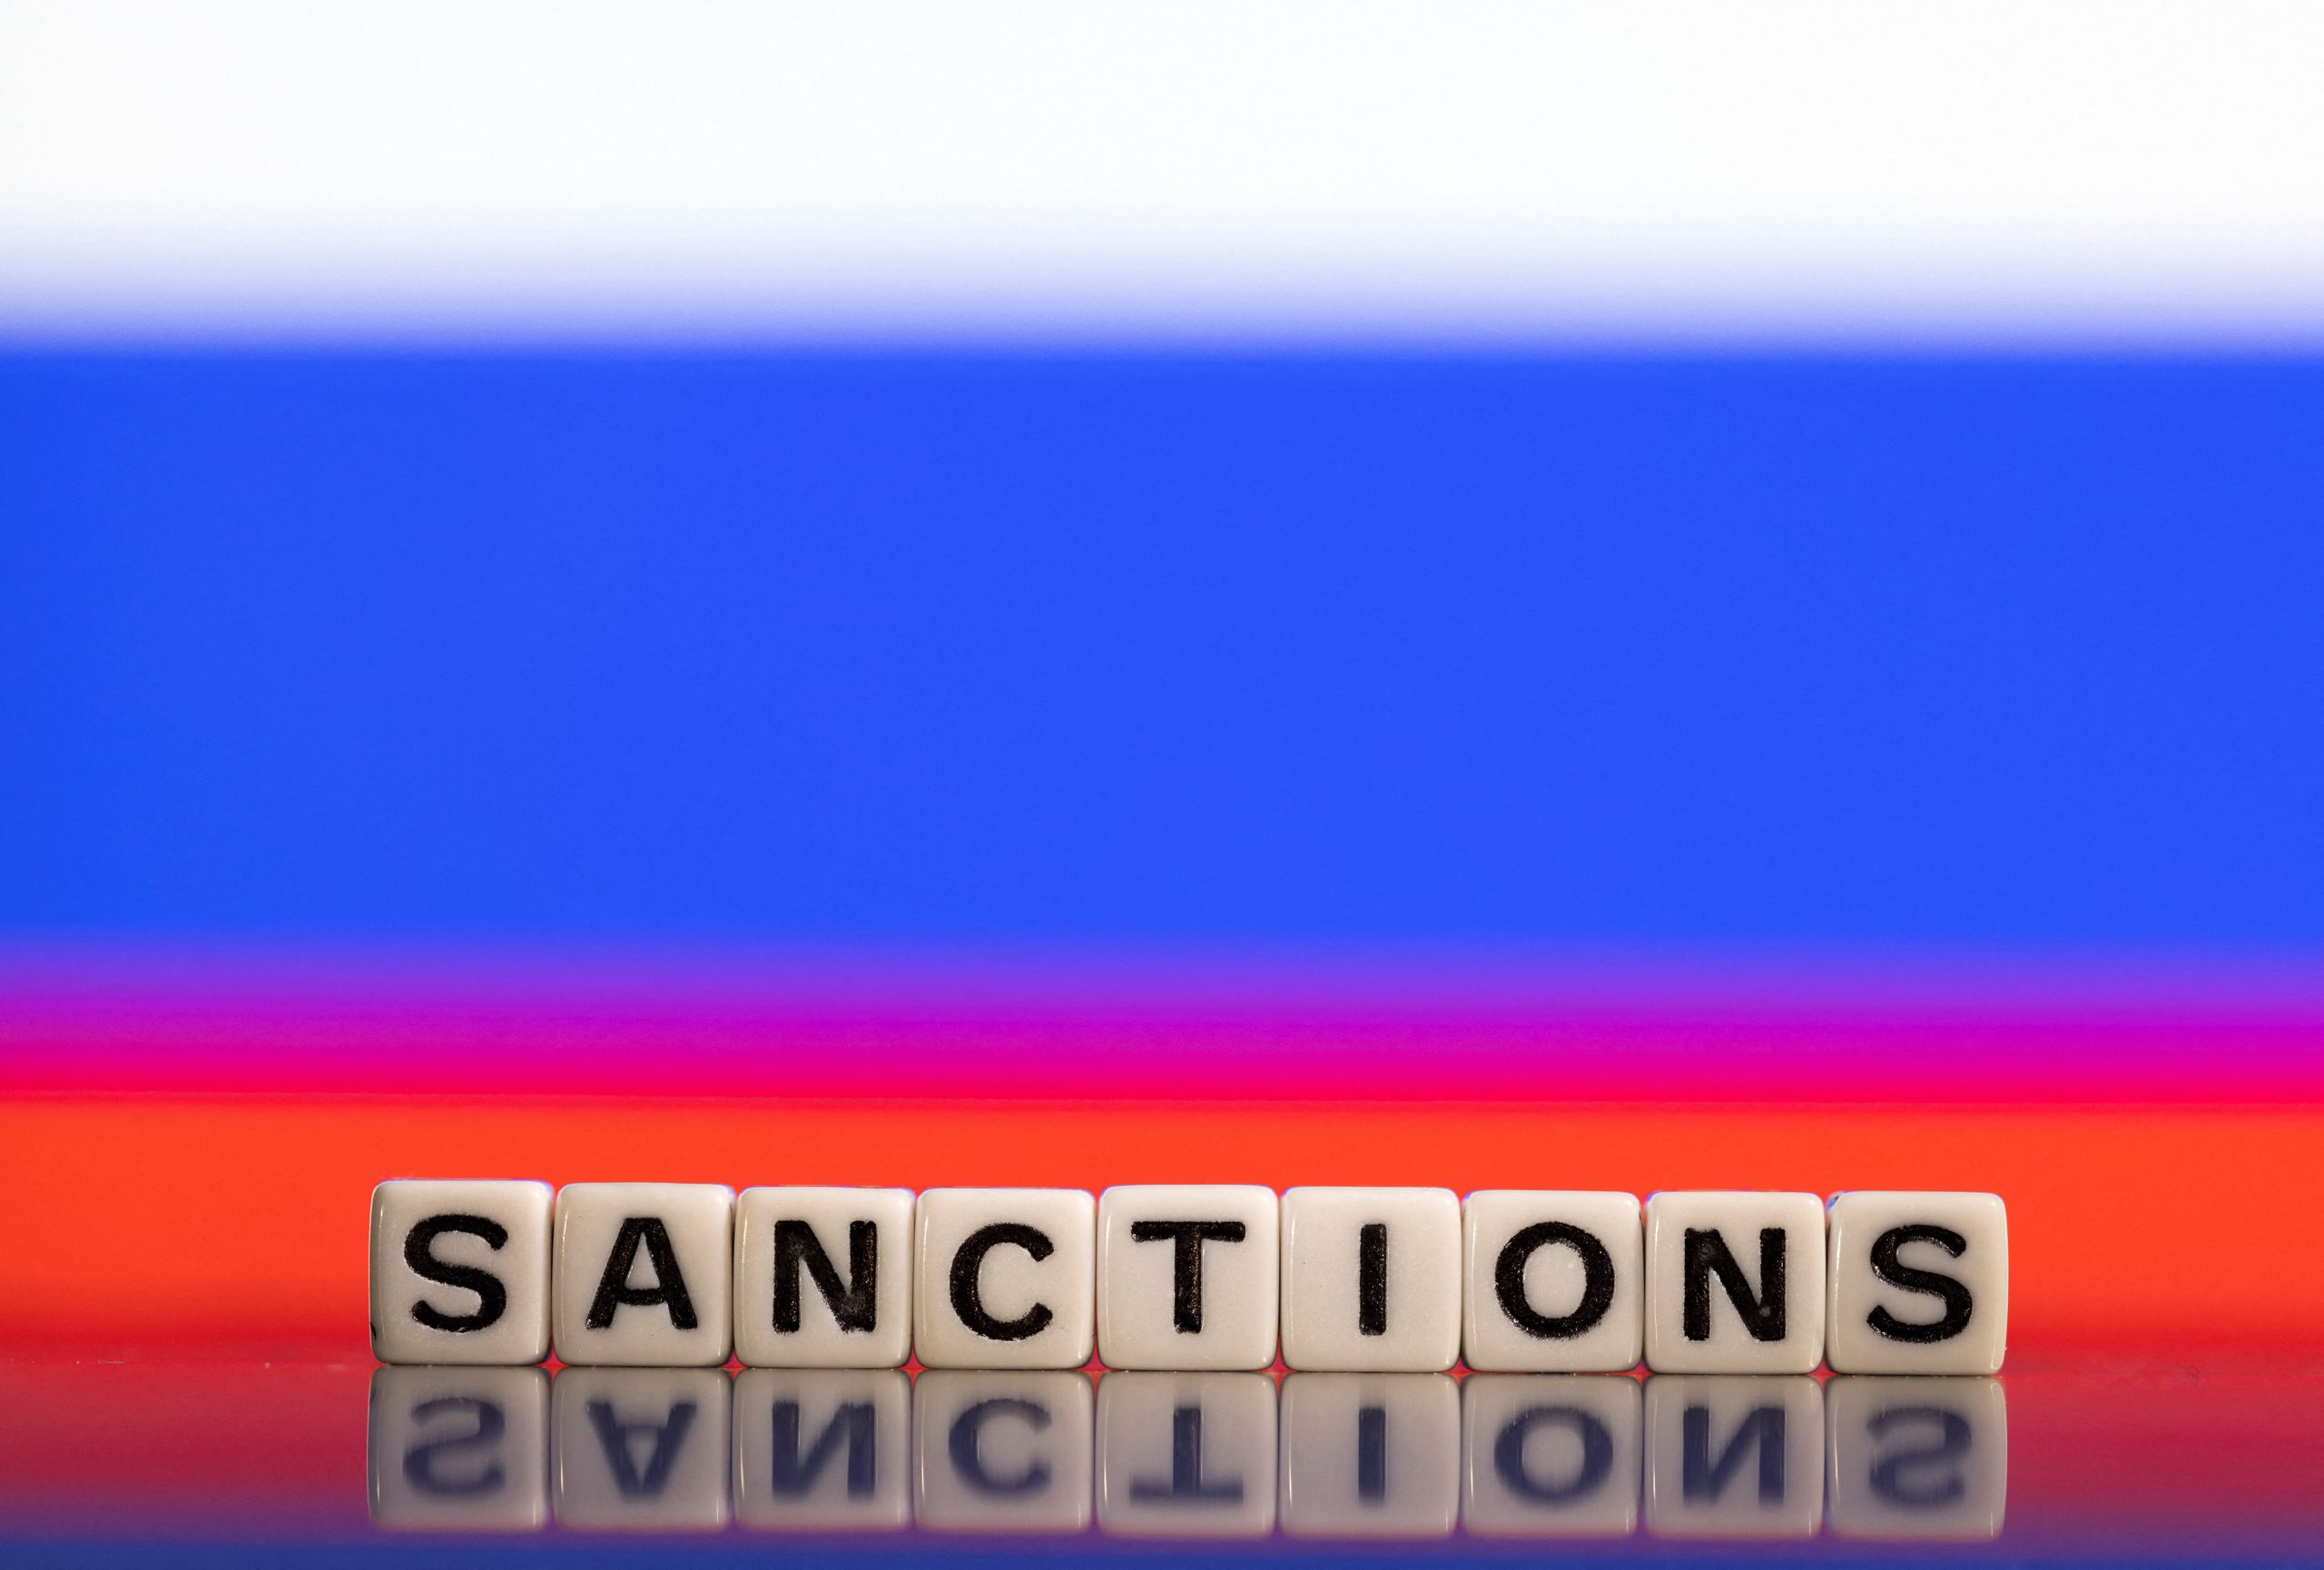 Χρυσός και πετρέλαιο: Έτσι «χαλαρώνουν» οι κυρώσεις κατά της Ρωσίας